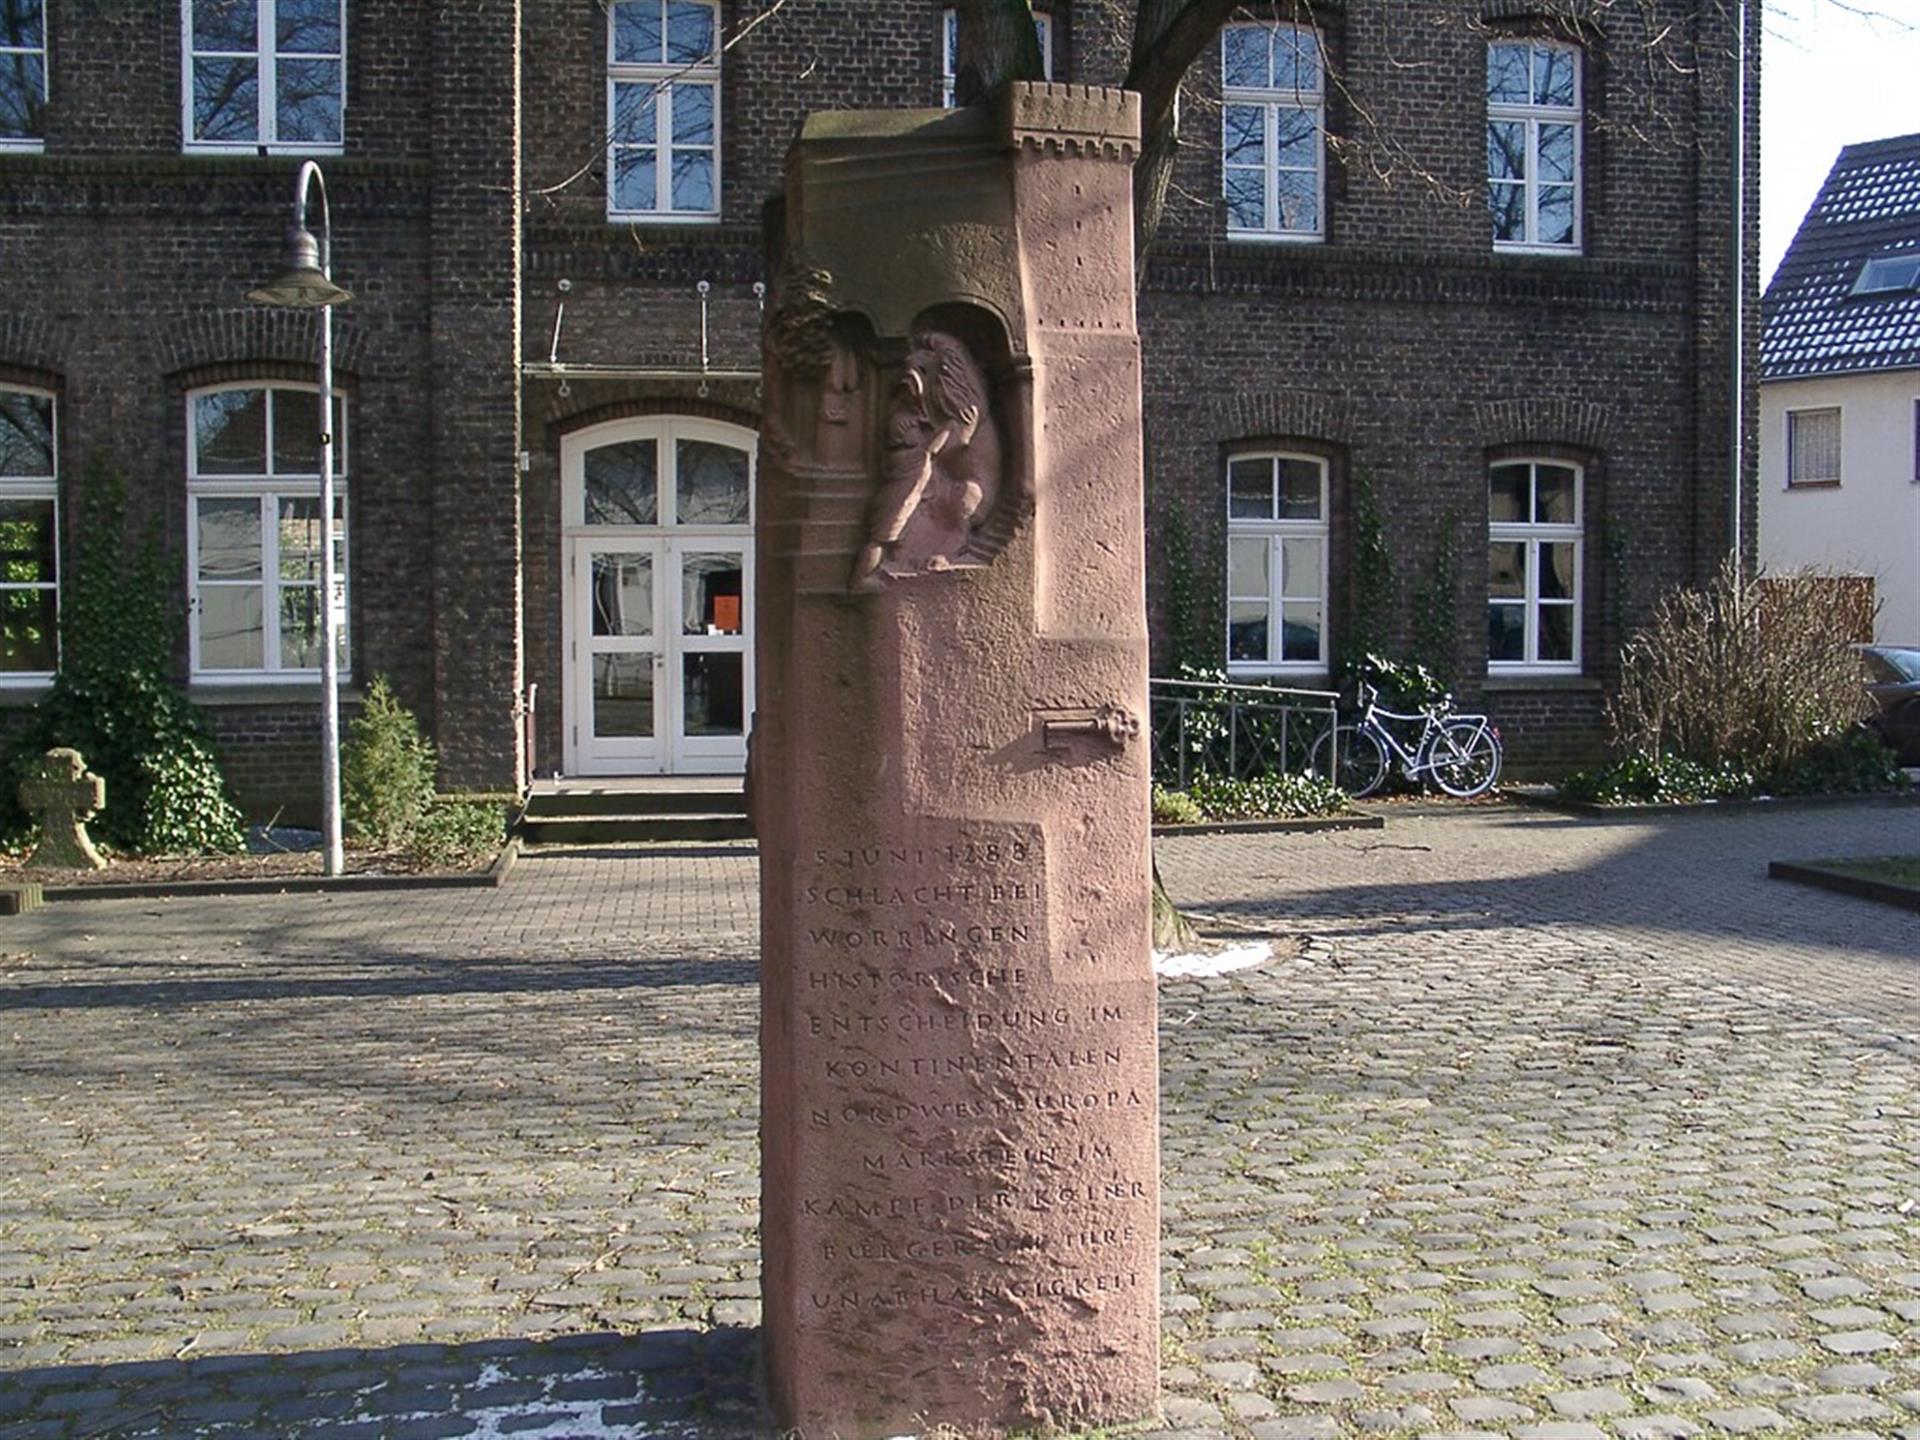 Denkmal zur Erinnerung an die Schlacht von Worringen 1288 in Köln-Worringen (2005). Oben ist ein Mann dargestellt, der mit einem Löwen kämpft. Darunter ist ein Schlüssel zu sehen. Auf dem Denkmal steht geschrieben: "5. JUNI 1288, SCHLACHT BEI WORRINGEN, HISTORISCHE ENTSCHEIDUNG IM KONTINENTALEN NORDWESTEUROPA MARKSTEIN IM KAMPF DER KÖLNER BÜRGER UM IHRE UNABHÄNGIGKEIT" &copy; Klaus Graf / gemeinfrei (via Wikimedia Commons)